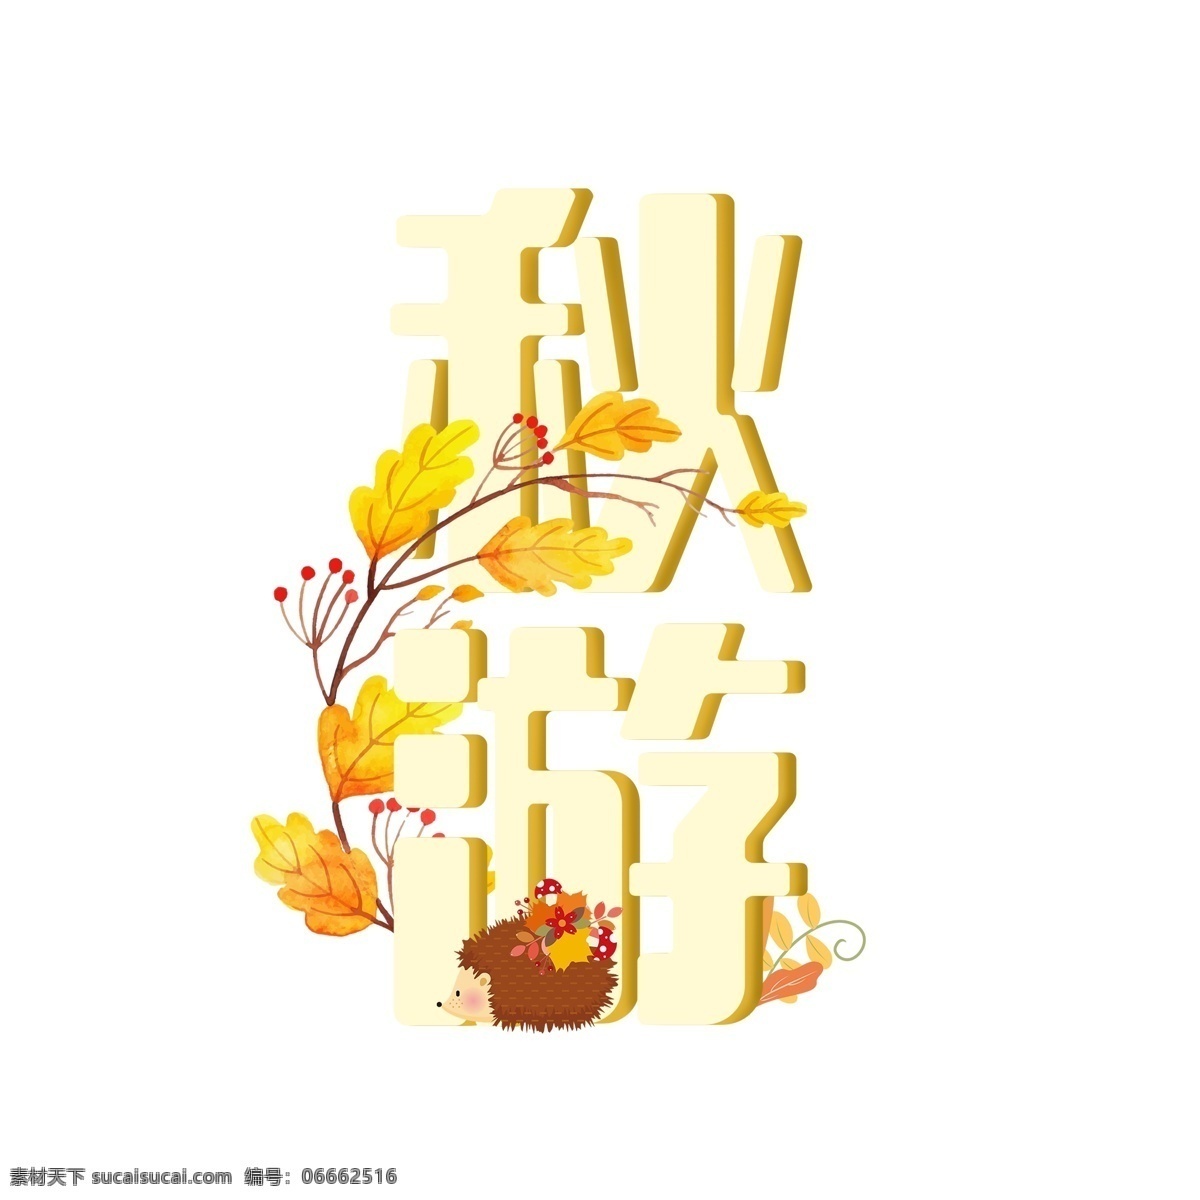 秋季 秋游 字体 原创 动物 树叶 秋天 免费 黄色 落叶 刺猬 黄色的叶子